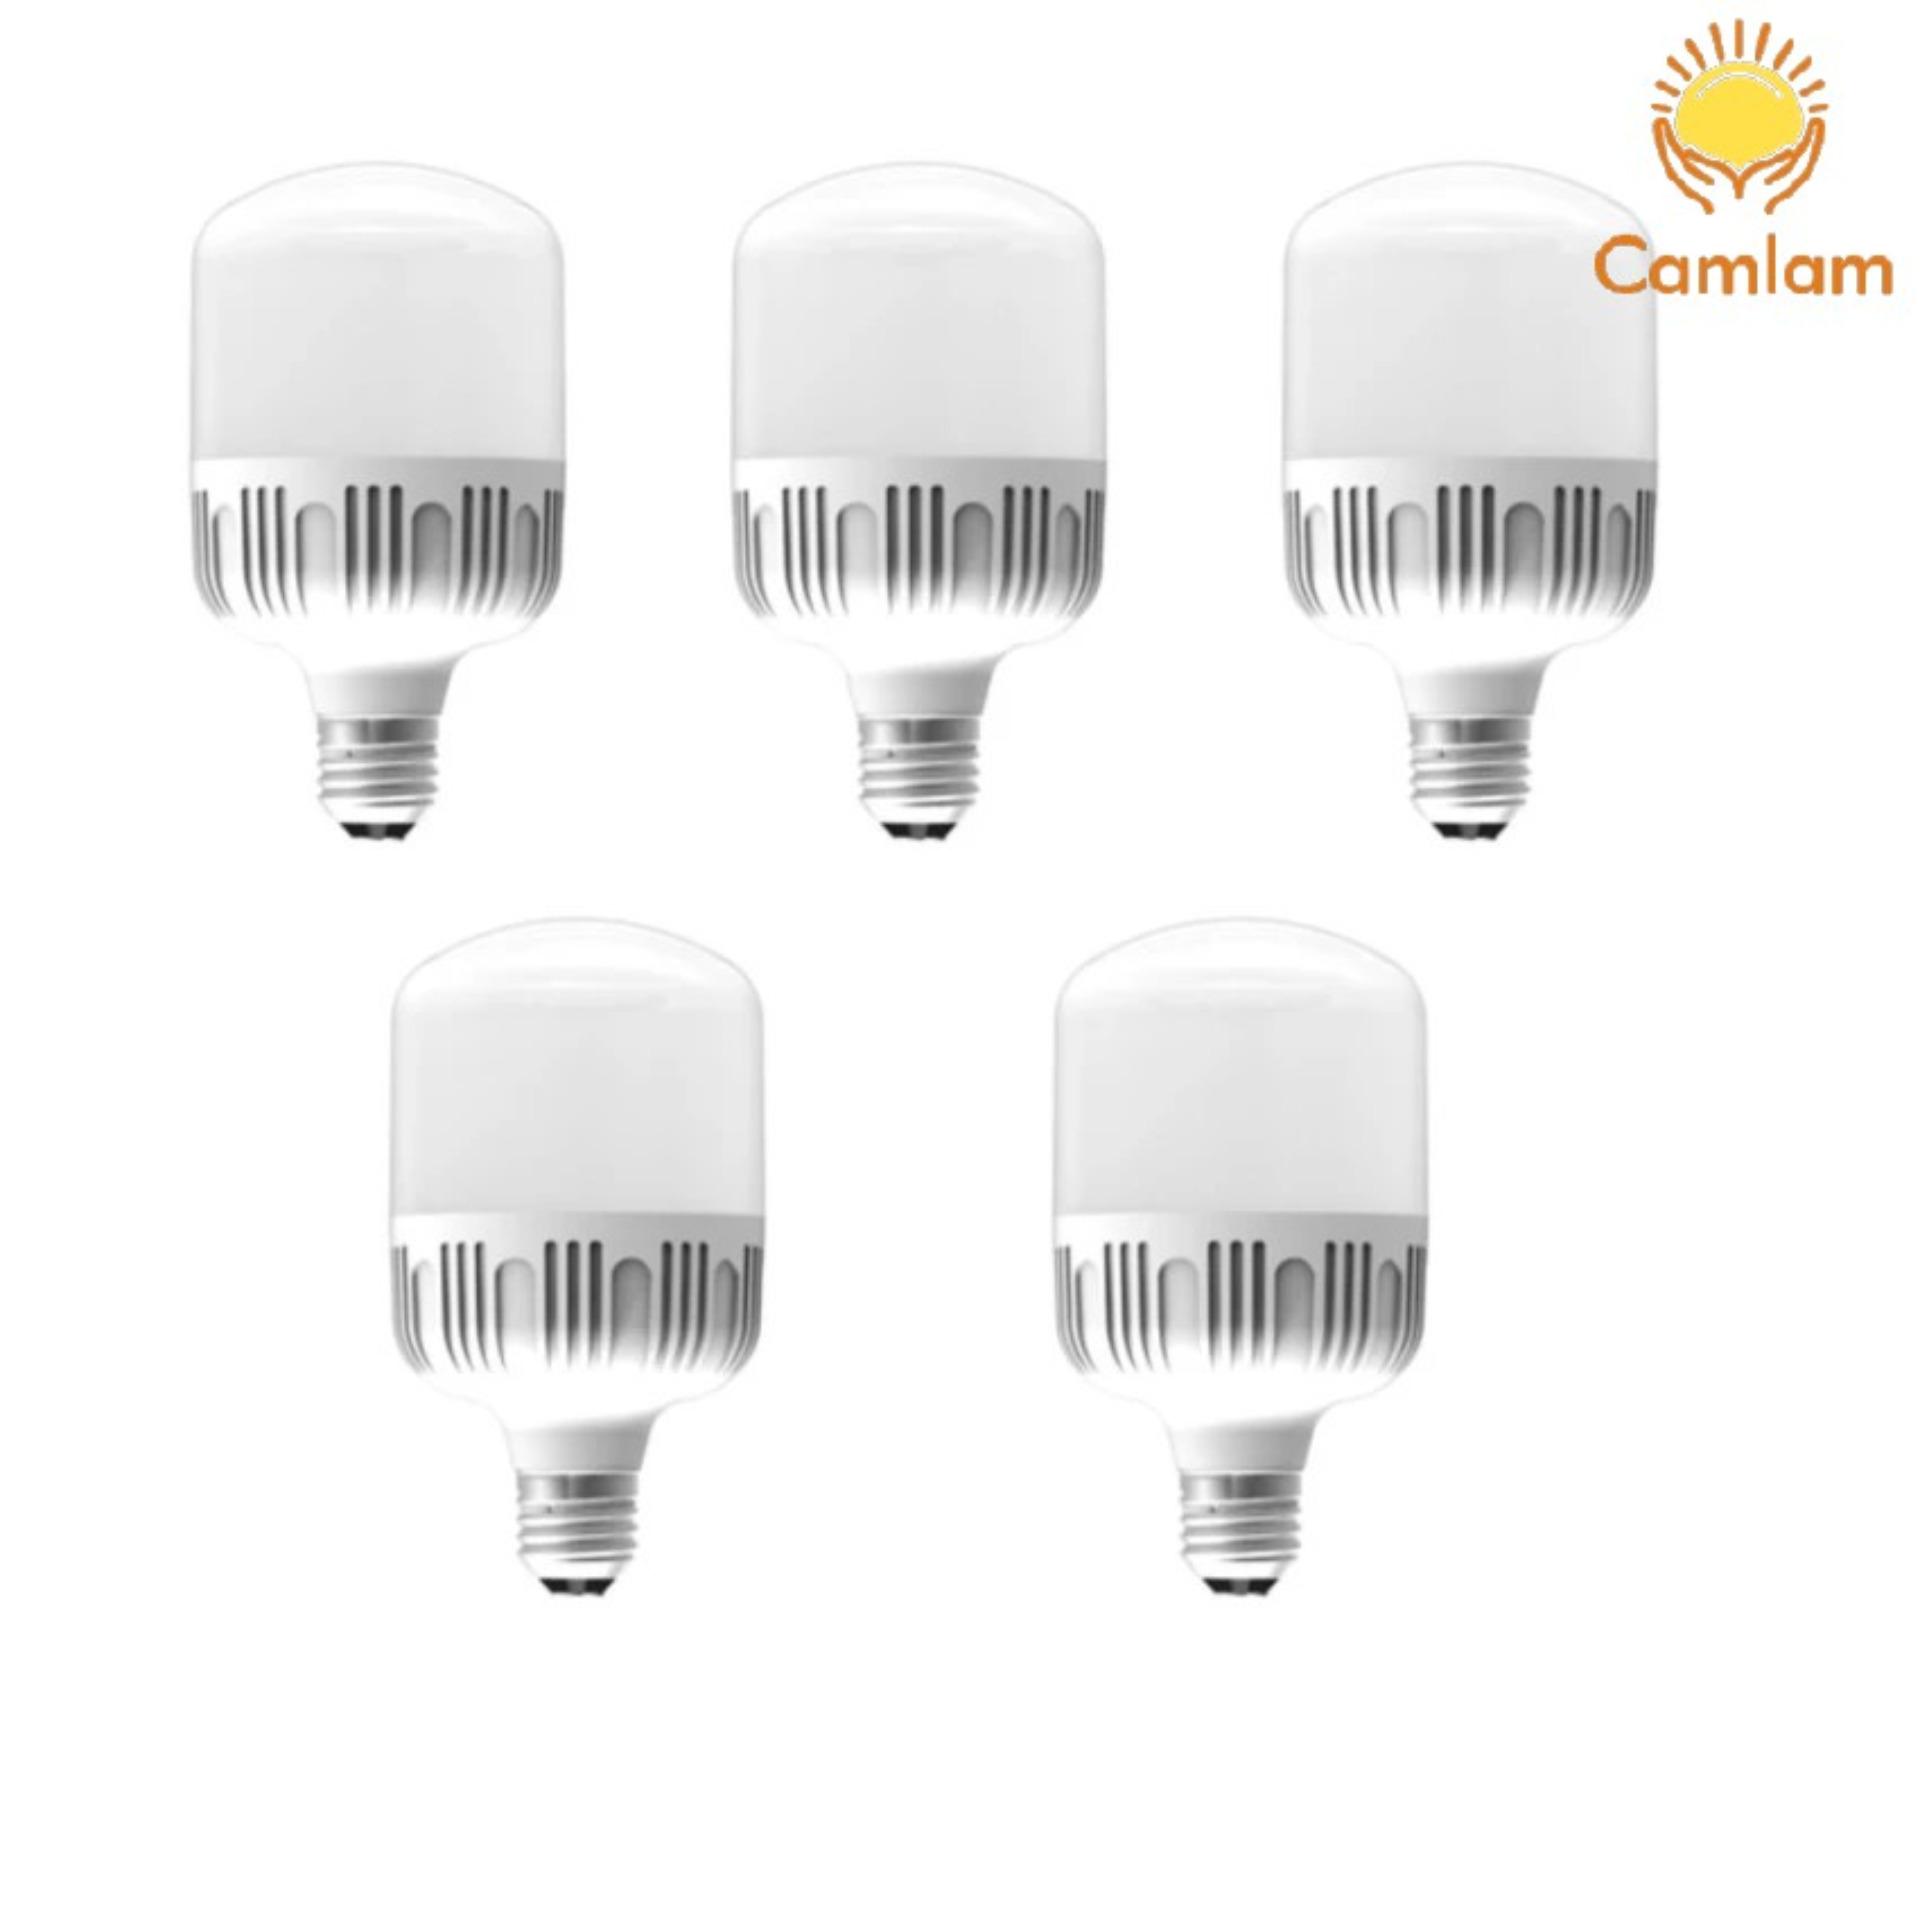 Bộ 5 bóng đèn led Bulb chống nước 9w ( ánh sáng trắng )